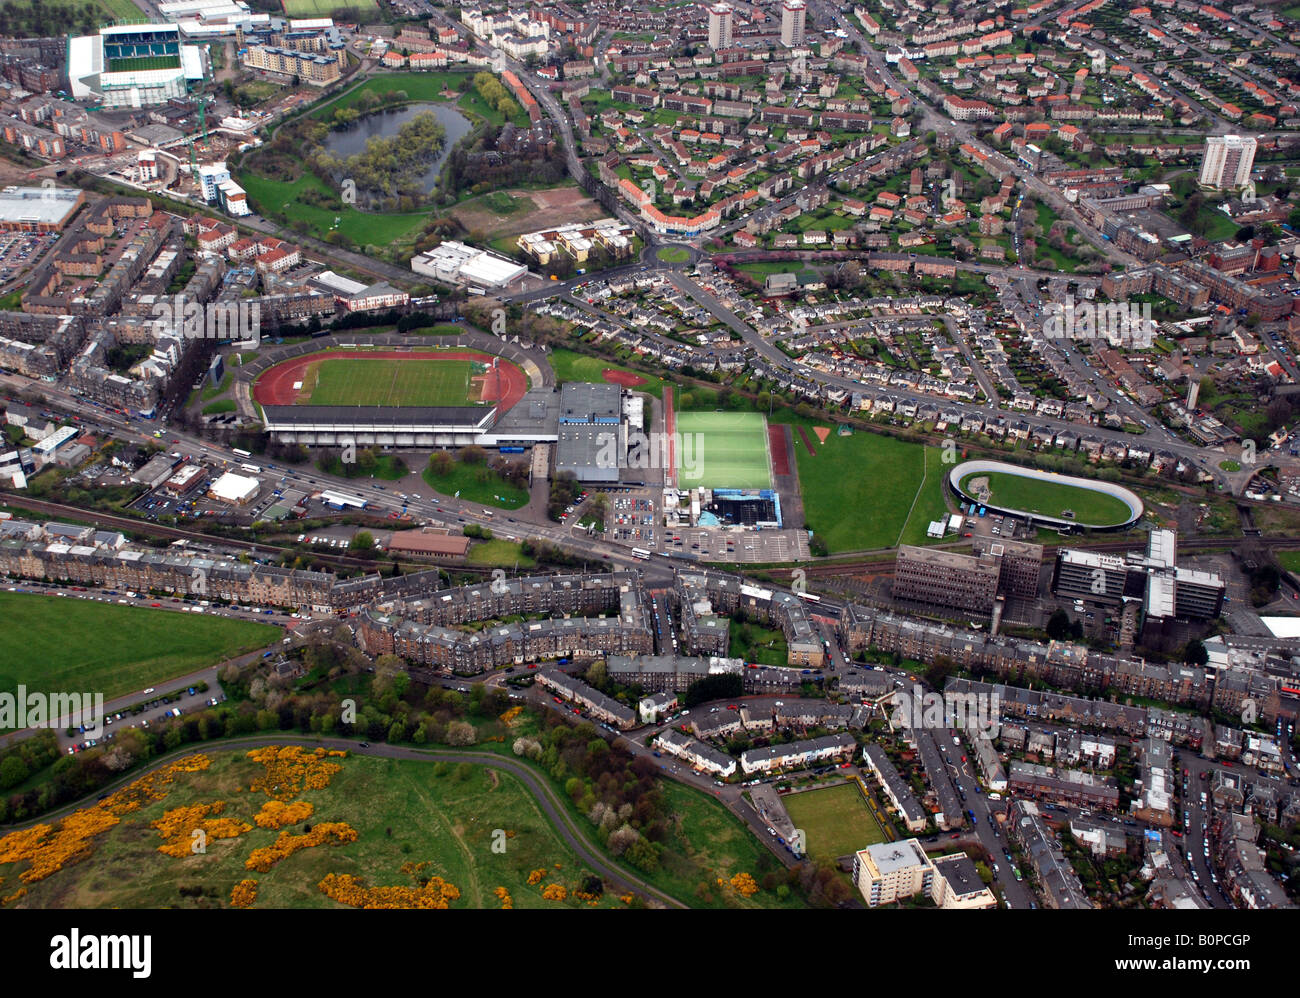 Luftaufnahme von Edinburgh zeigt drei Stadien, Meadowbank-Leichtathletik-Laufbahn, Meadowbank Velodrome und Easter Road Fußballstadion Stockfoto